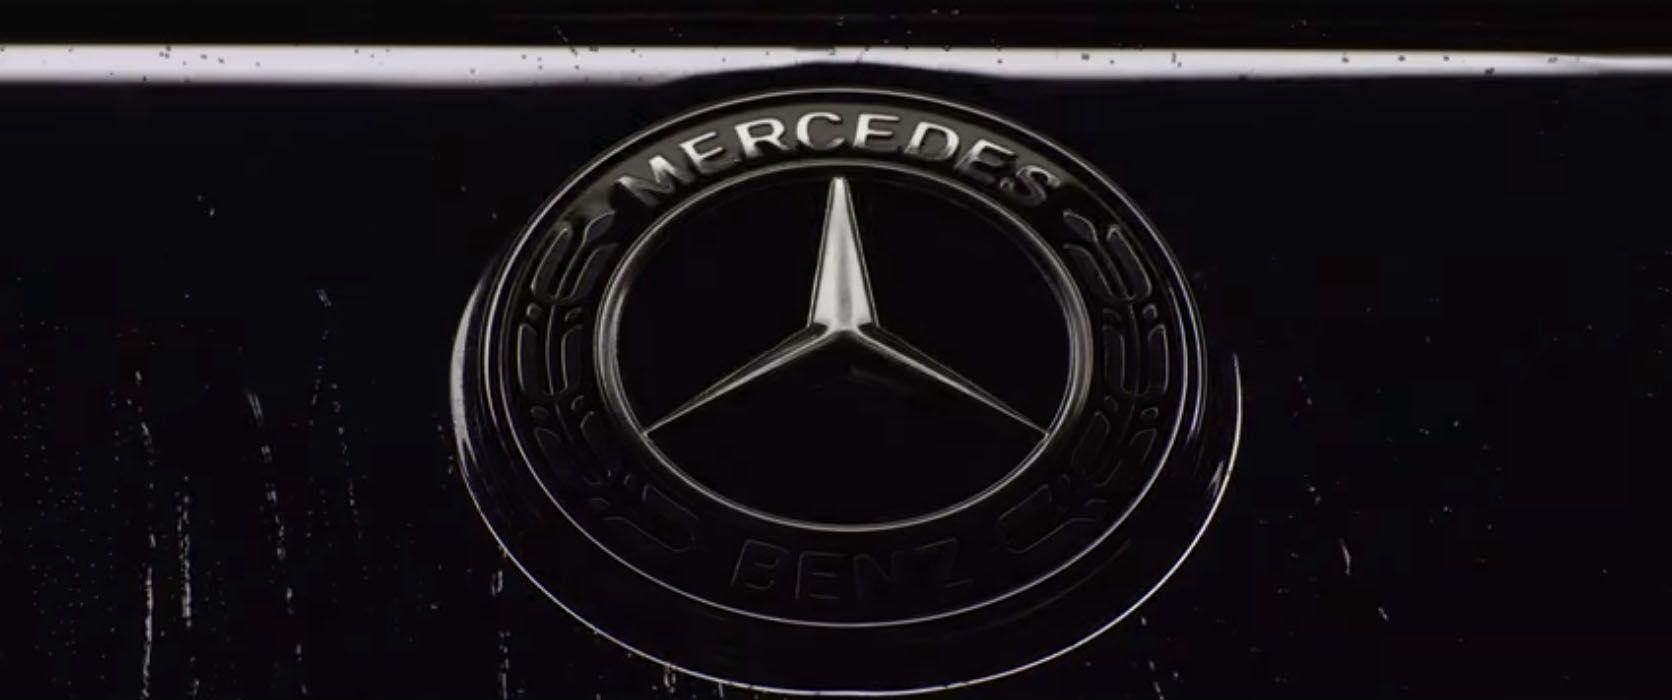 2018 Mercedes Logo - S Class Commercial Finally Makes Sense Of The Mercedes Benz